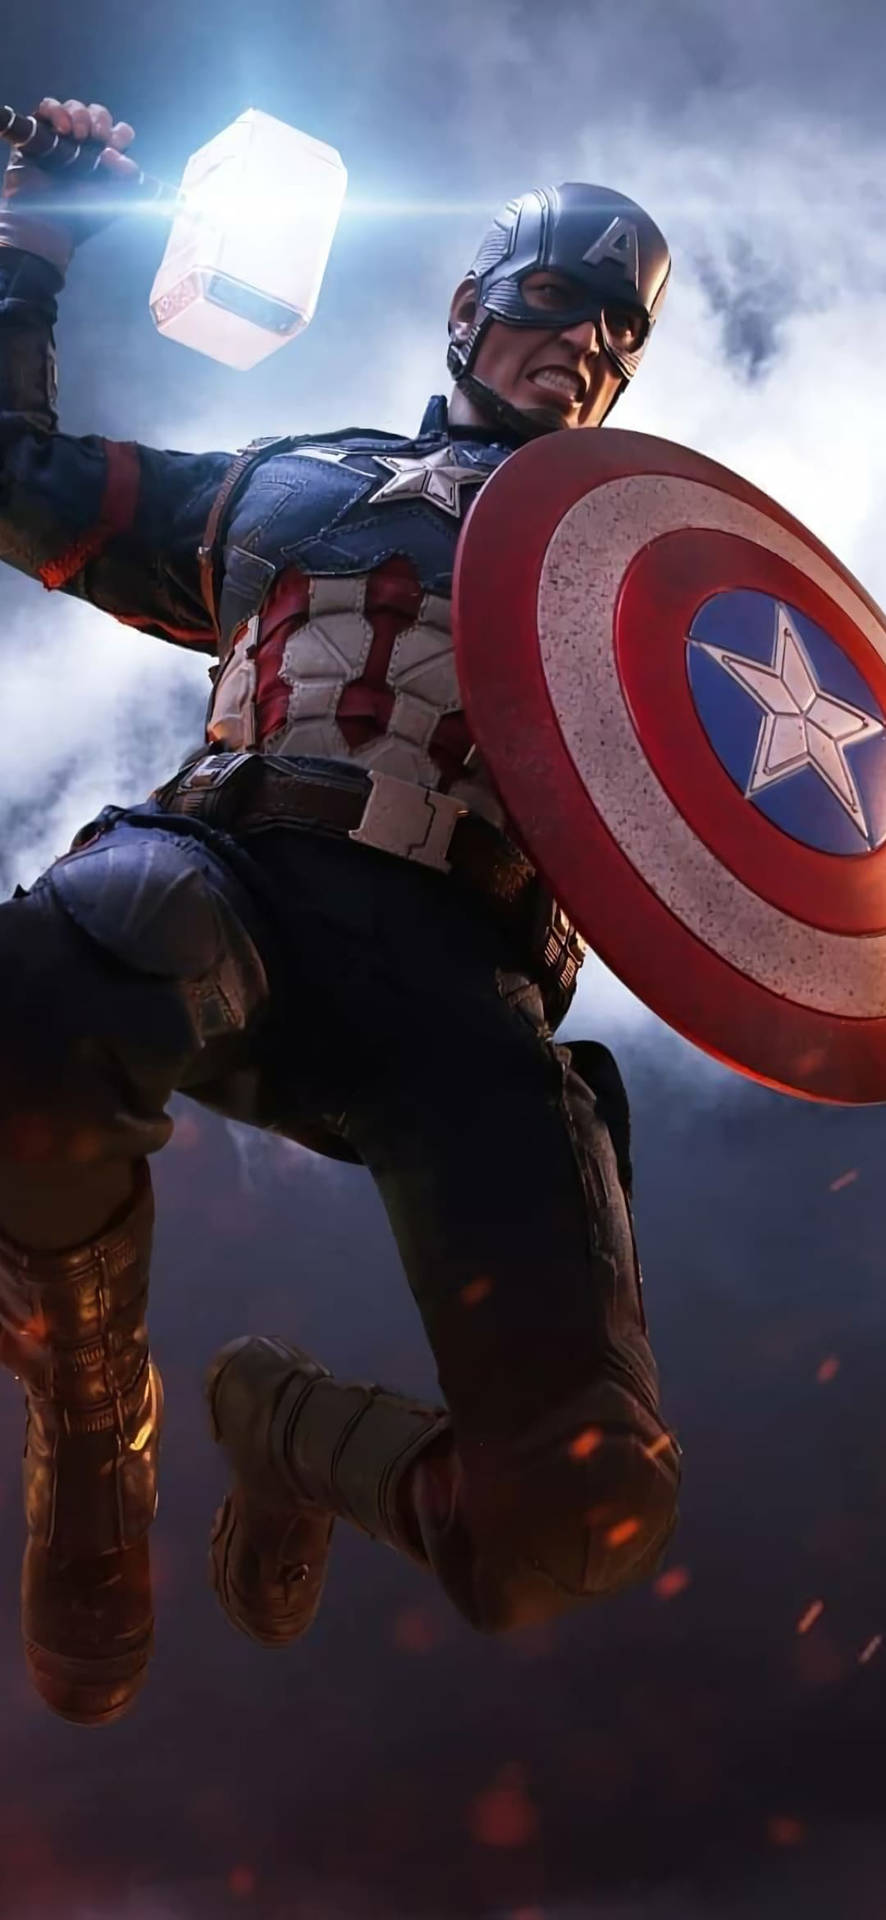 Bedste Captain America Mjolnir Slag Wallpaper